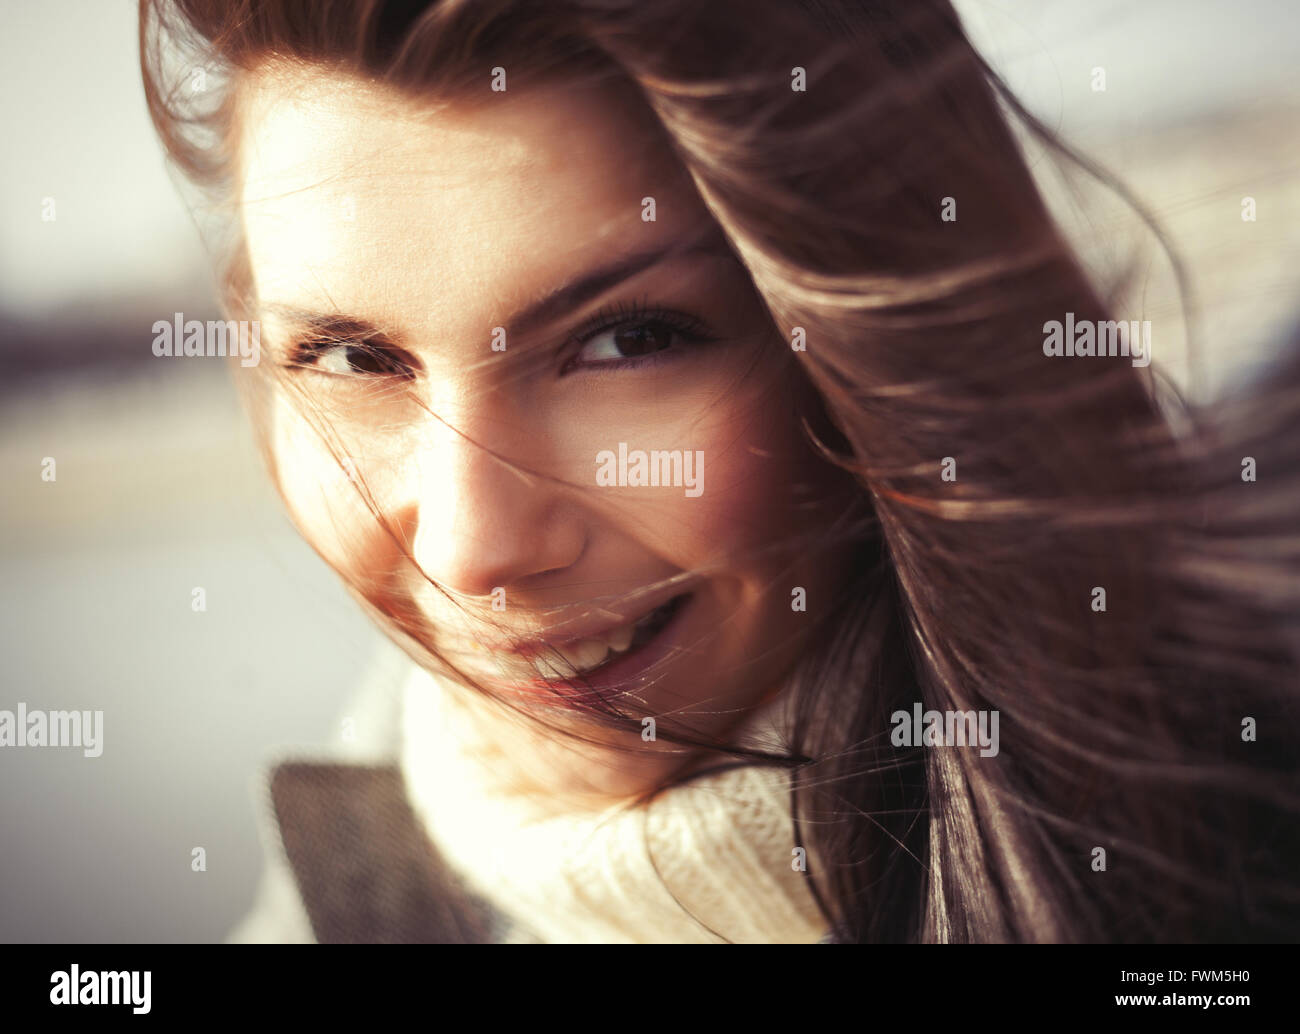 Windy portrait of attractive young woman avec un joyeux sourire à pleines dents. Le modèle montrant friendly l'expression du visage et ses cheveux est très beau Banque D'Images